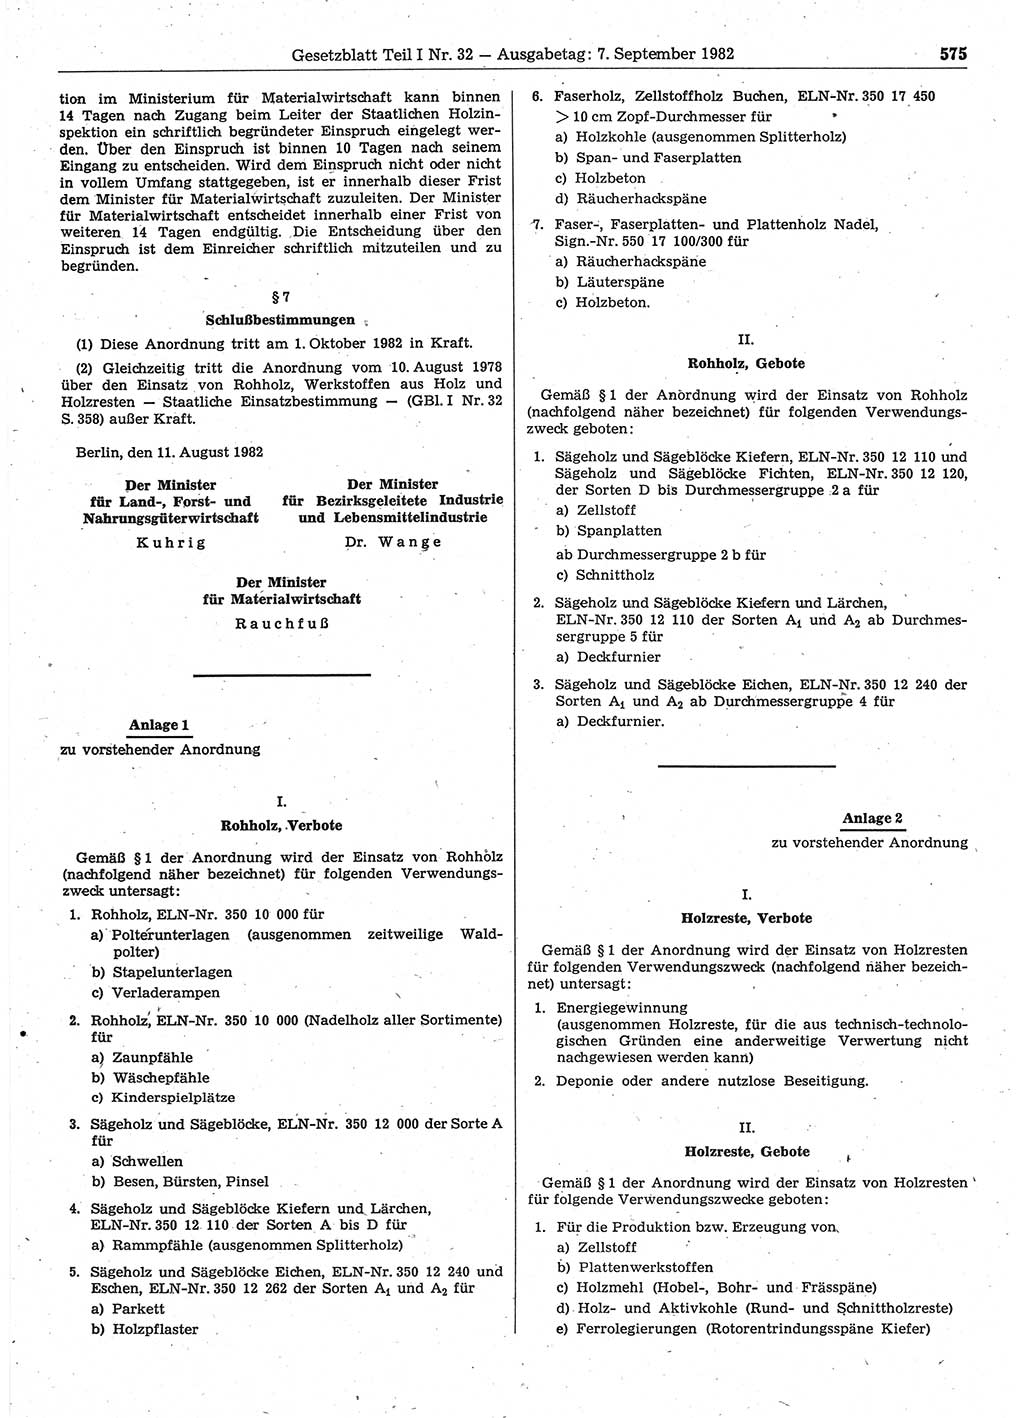 Gesetzblatt (GBl.) der Deutschen Demokratischen Republik (DDR) Teil Ⅰ 1982, Seite 575 (GBl. DDR Ⅰ 1982, S. 575)